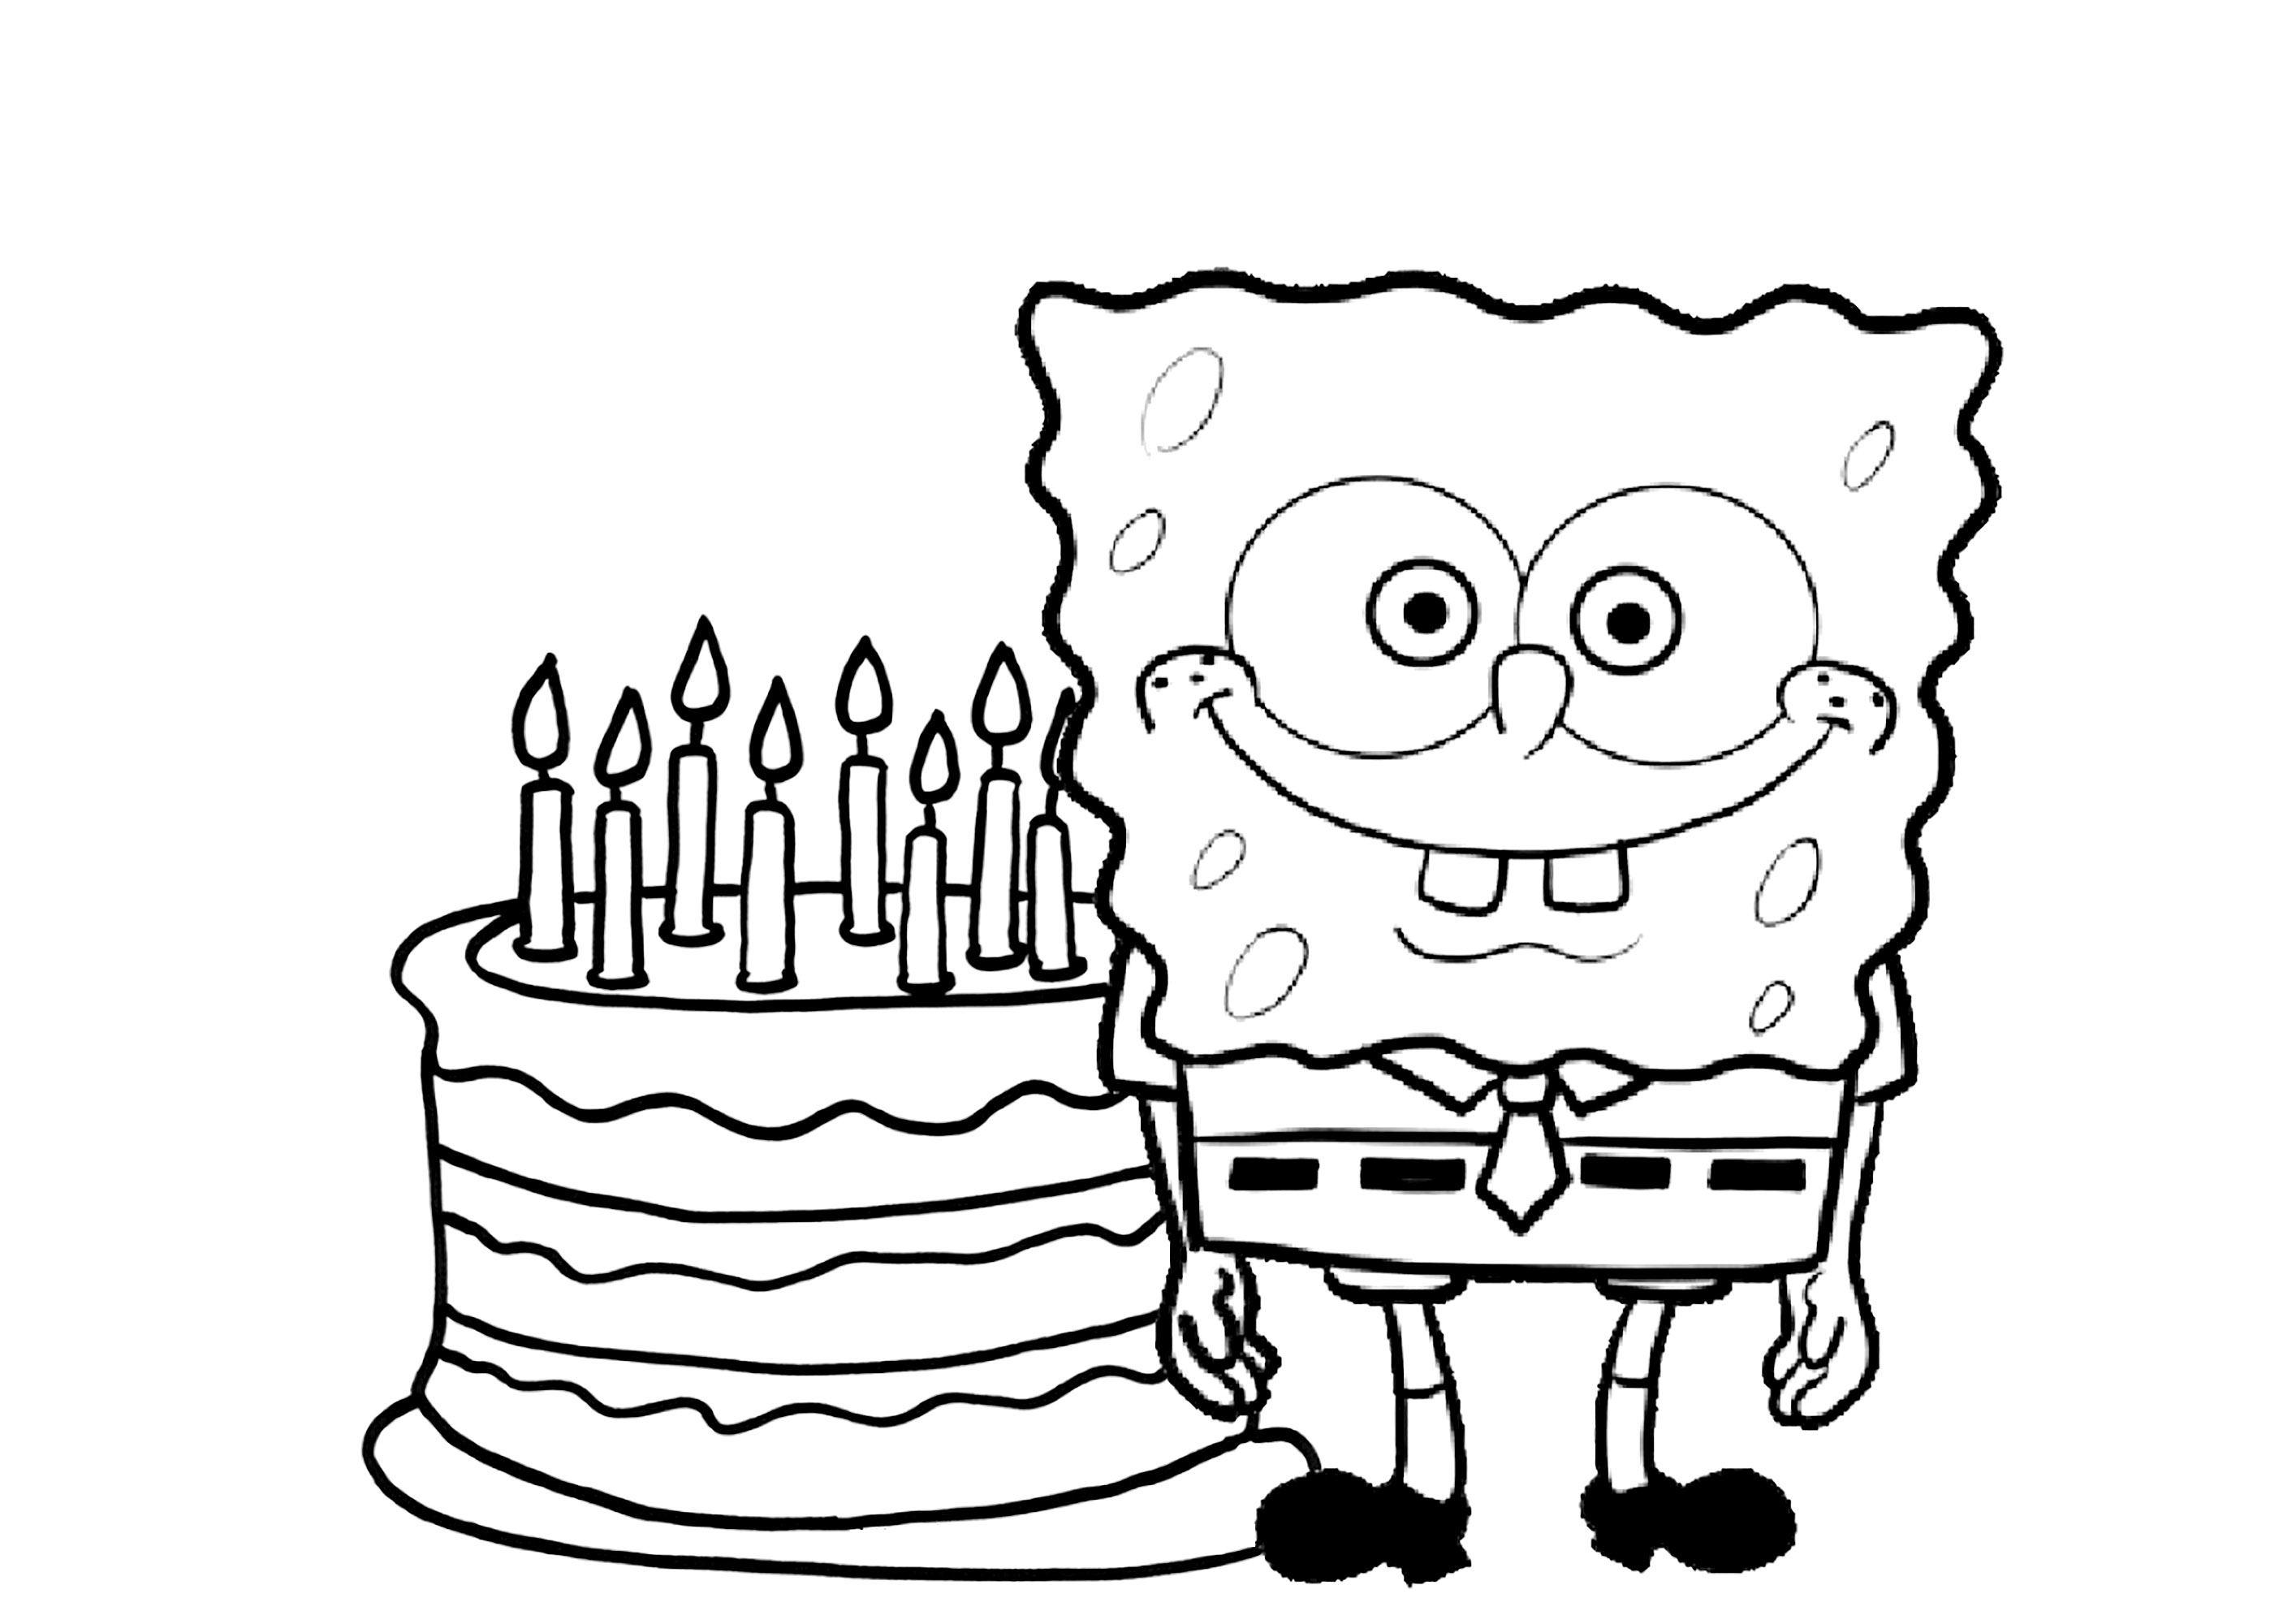 É o aniversário do Sponge Bob. Quantos anos tem o Bob? Conta as velas!